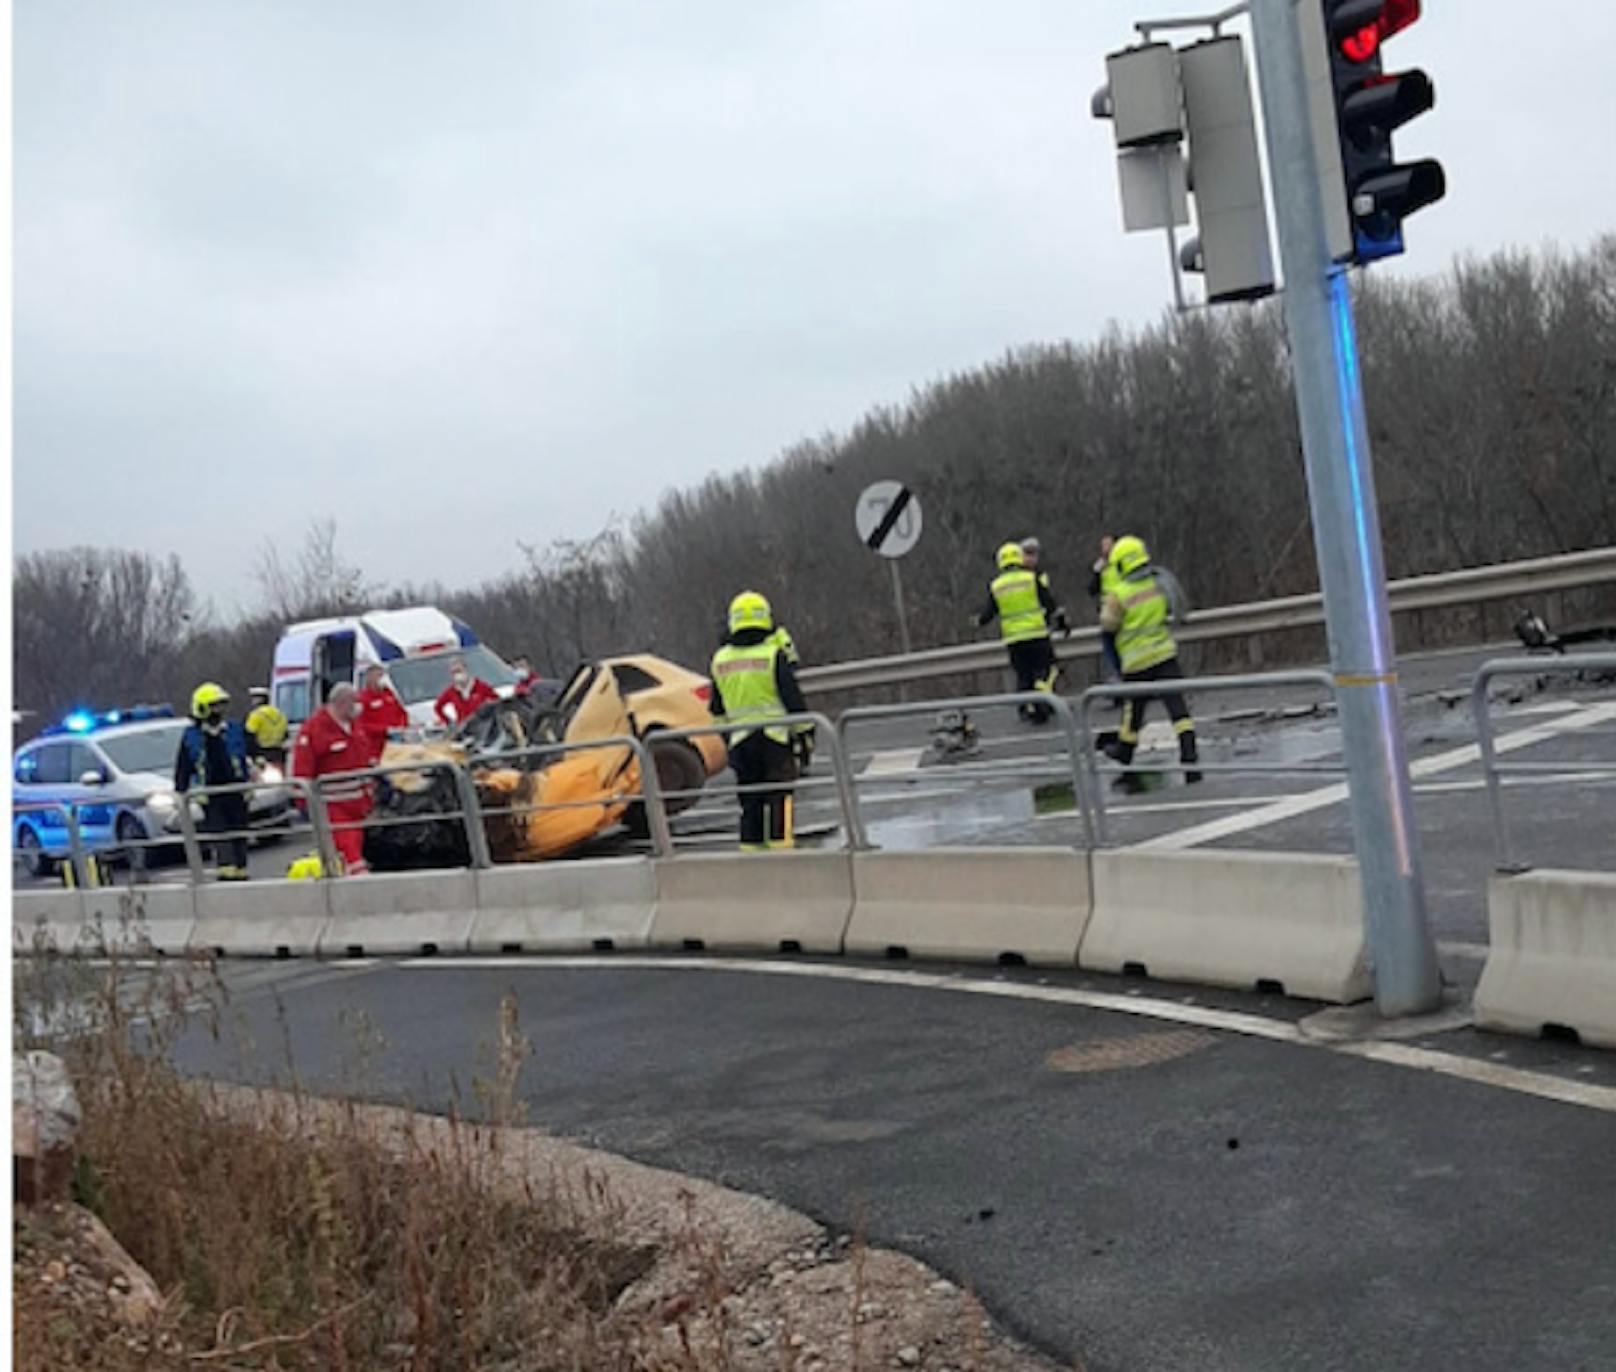 Lkw prallte gegen orangen Wagen: 2 Tote